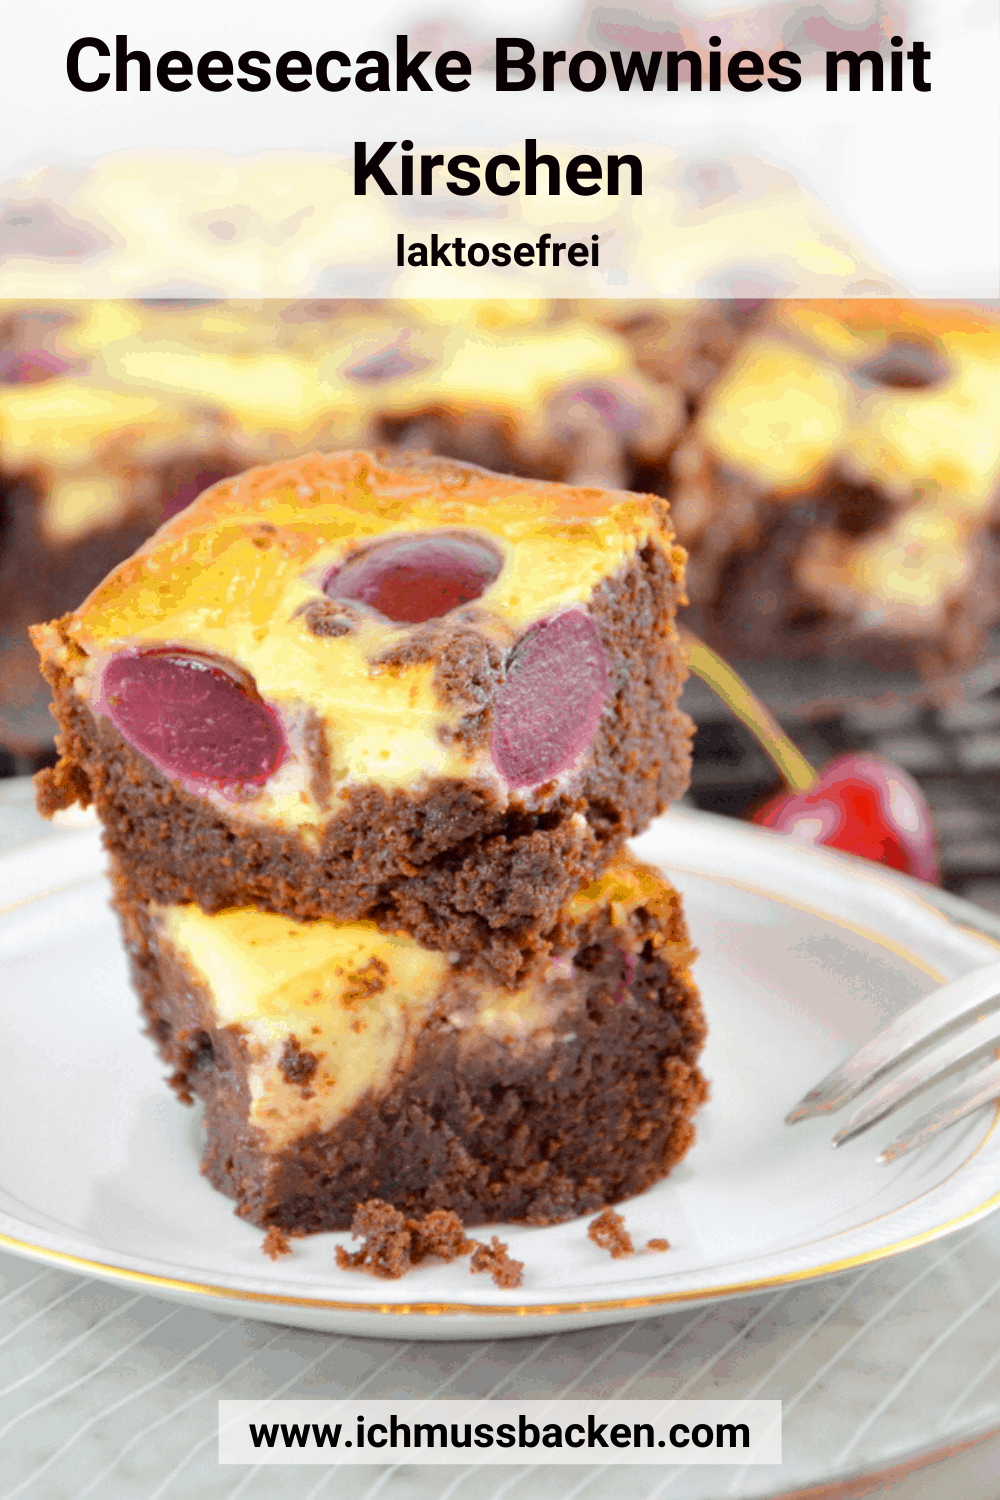 Cheesecake Brownies mit Kirschen, zwei Stück gestapelt auf Teller, weitere Brownies auf Kuchengitter im Hintergrund